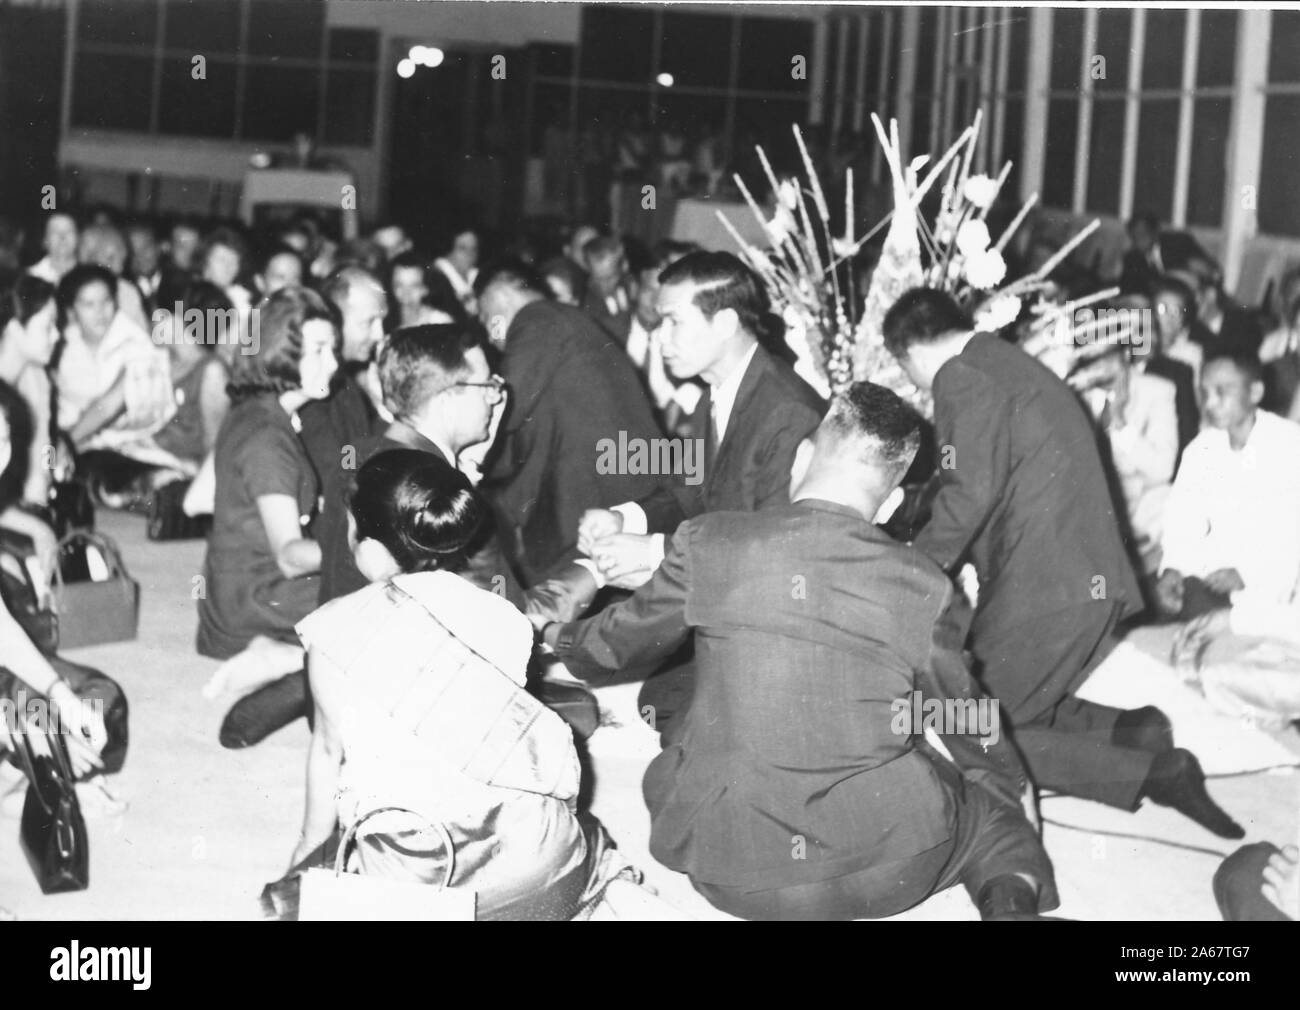 Un groupe d'hommes et de femmes habillés formellement s'assoit sur le sol, certains recevant des bracelets Sai Sin, lors d'une cérémonie Baci lors d'un événement pour l'armée américaine et l'armée royale thaïlandaise, photographié pendant la guerre du Vietnam, 1968. () Banque D'Images